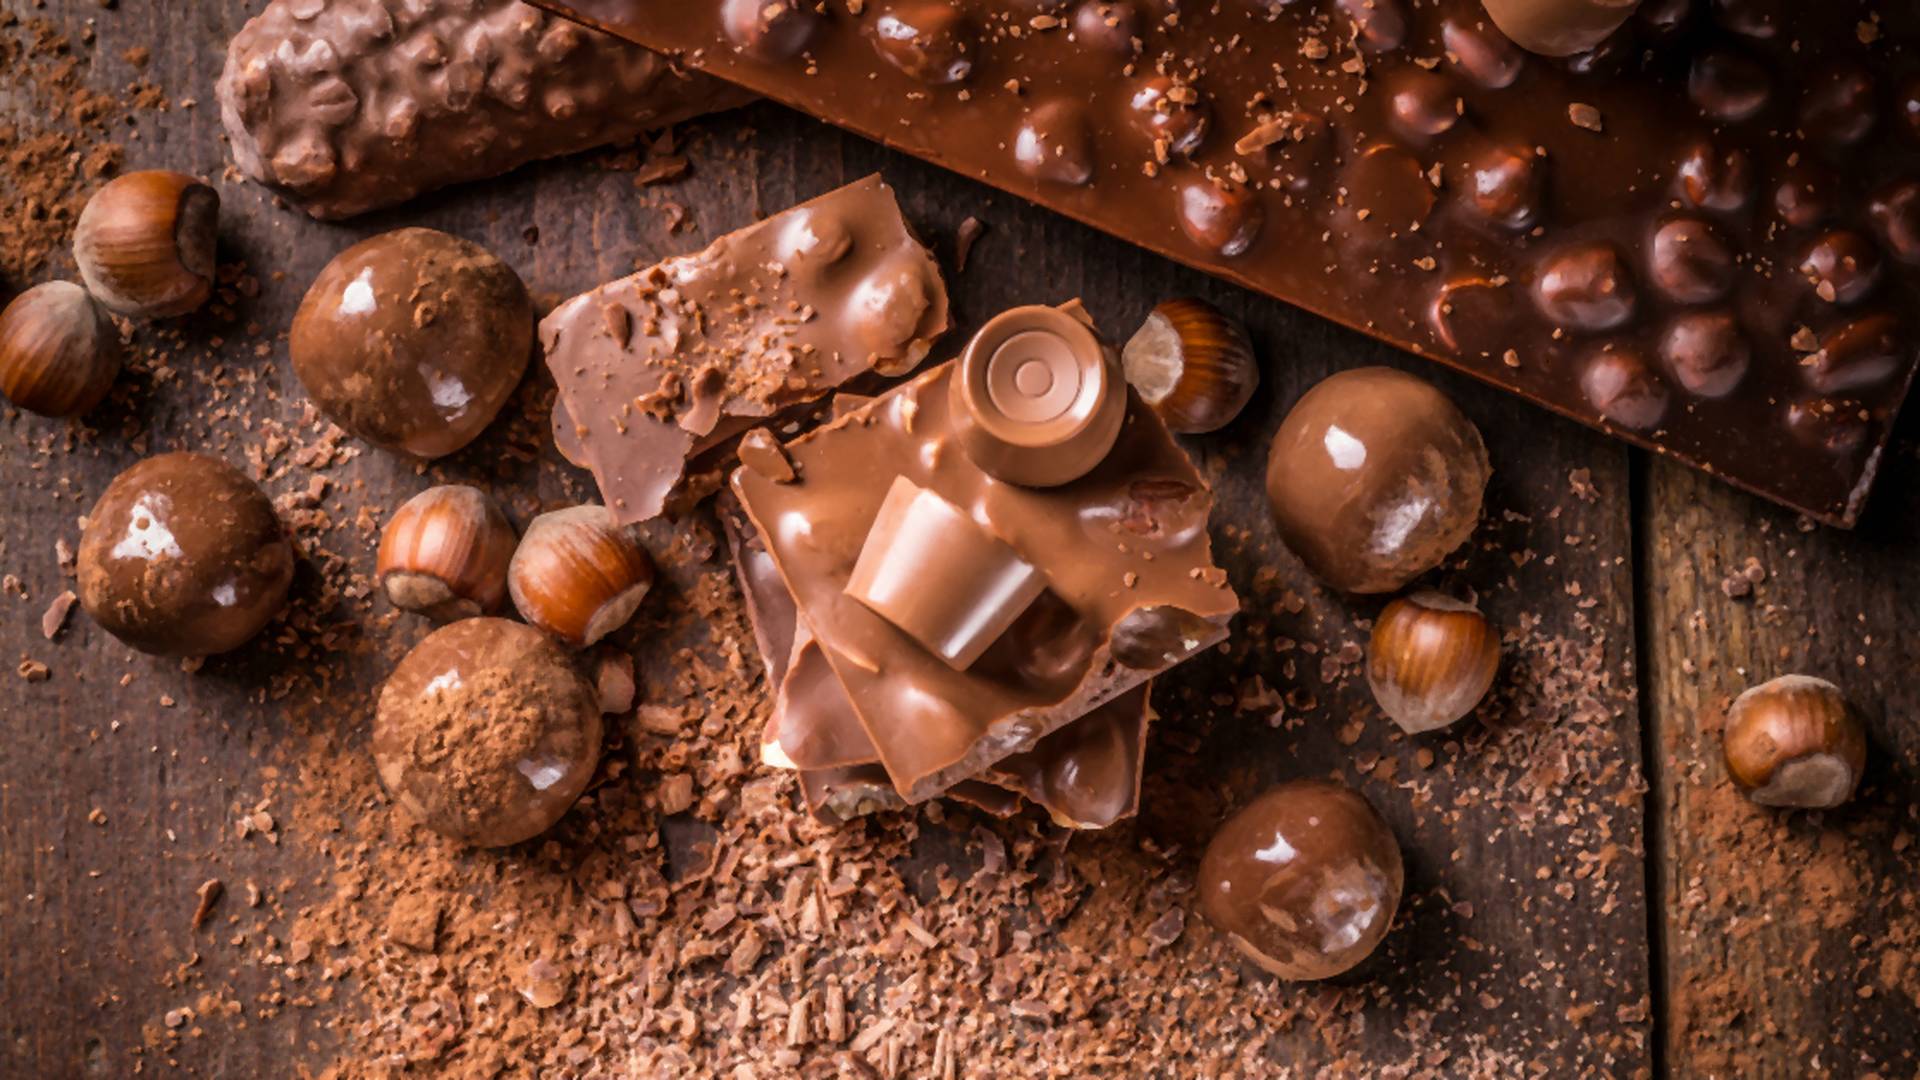 Dobrá správa pre milovníkov sladkého: Vedci potvrdili priaznivé účinky čokolády